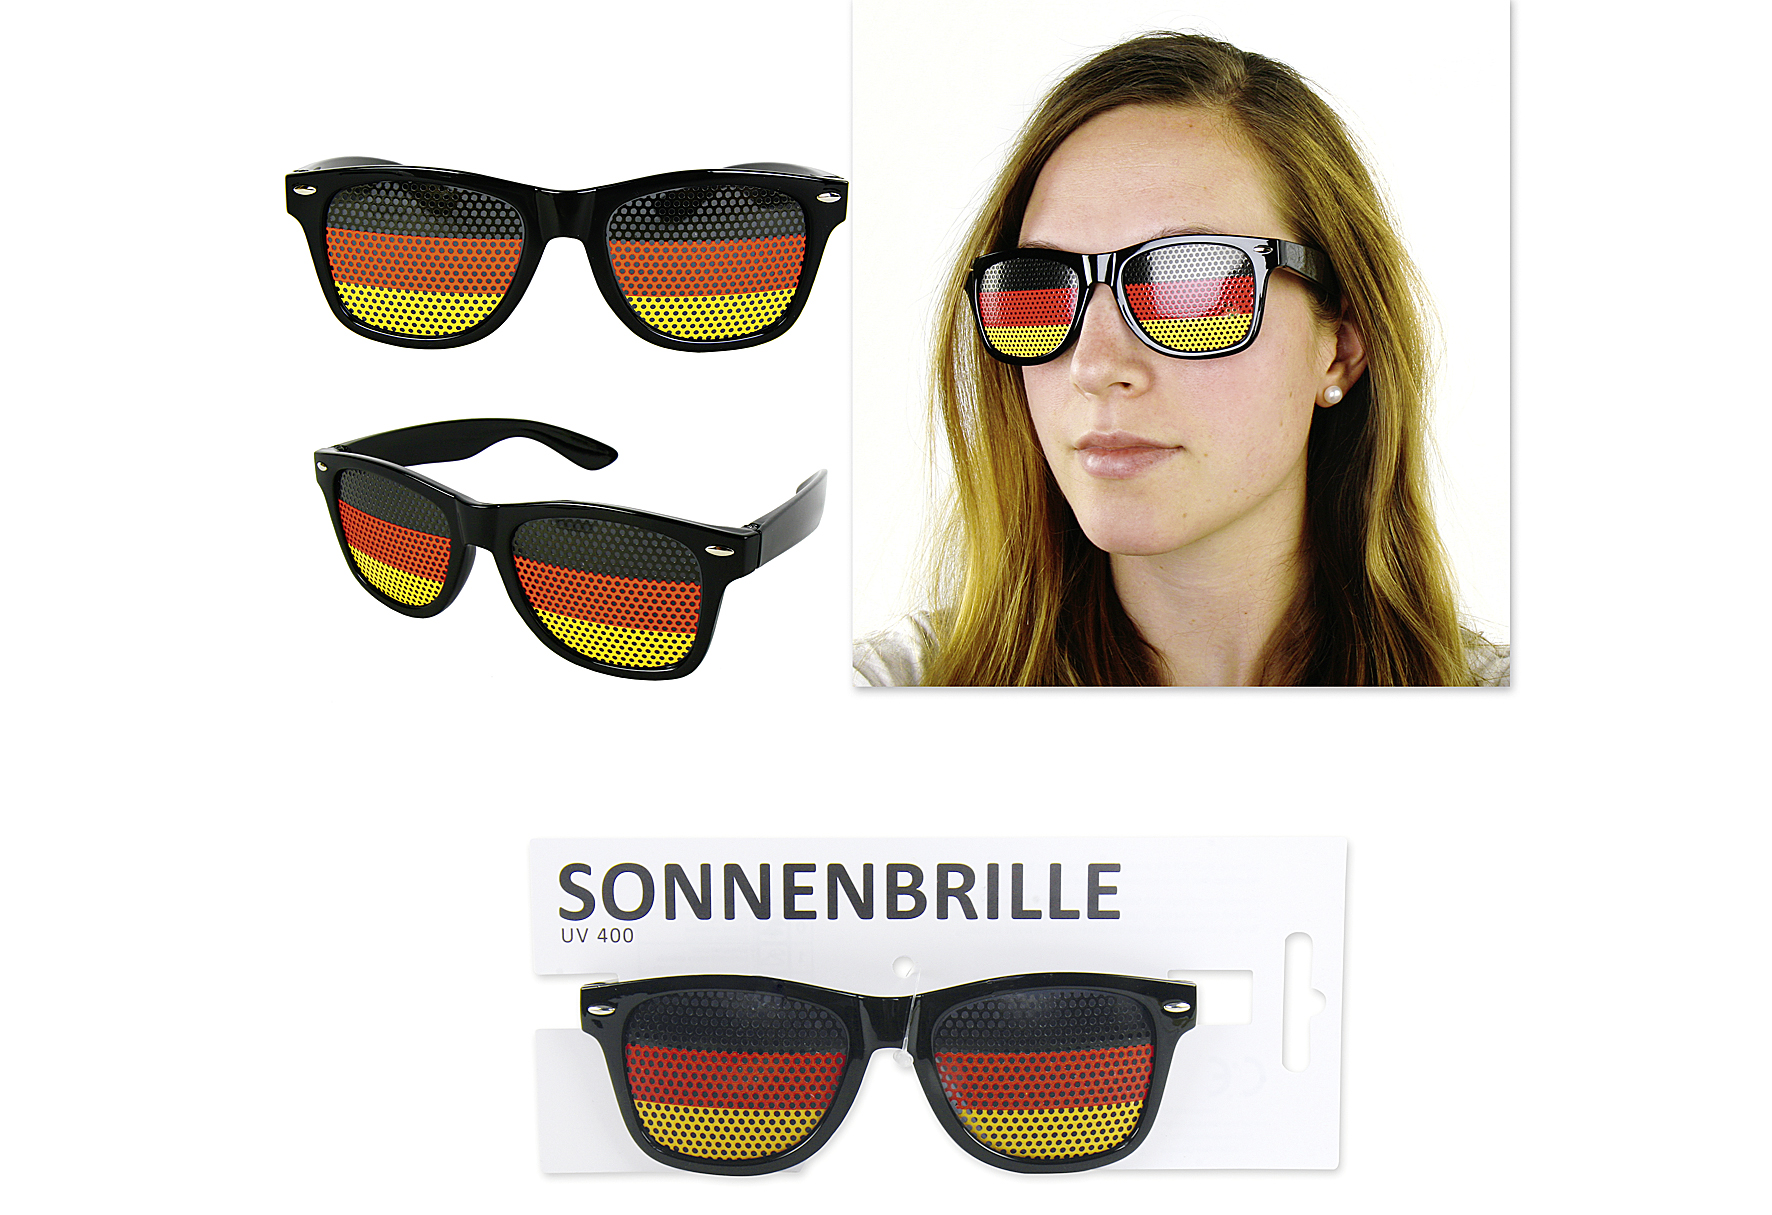 Sonnenbrille "Deutschland"